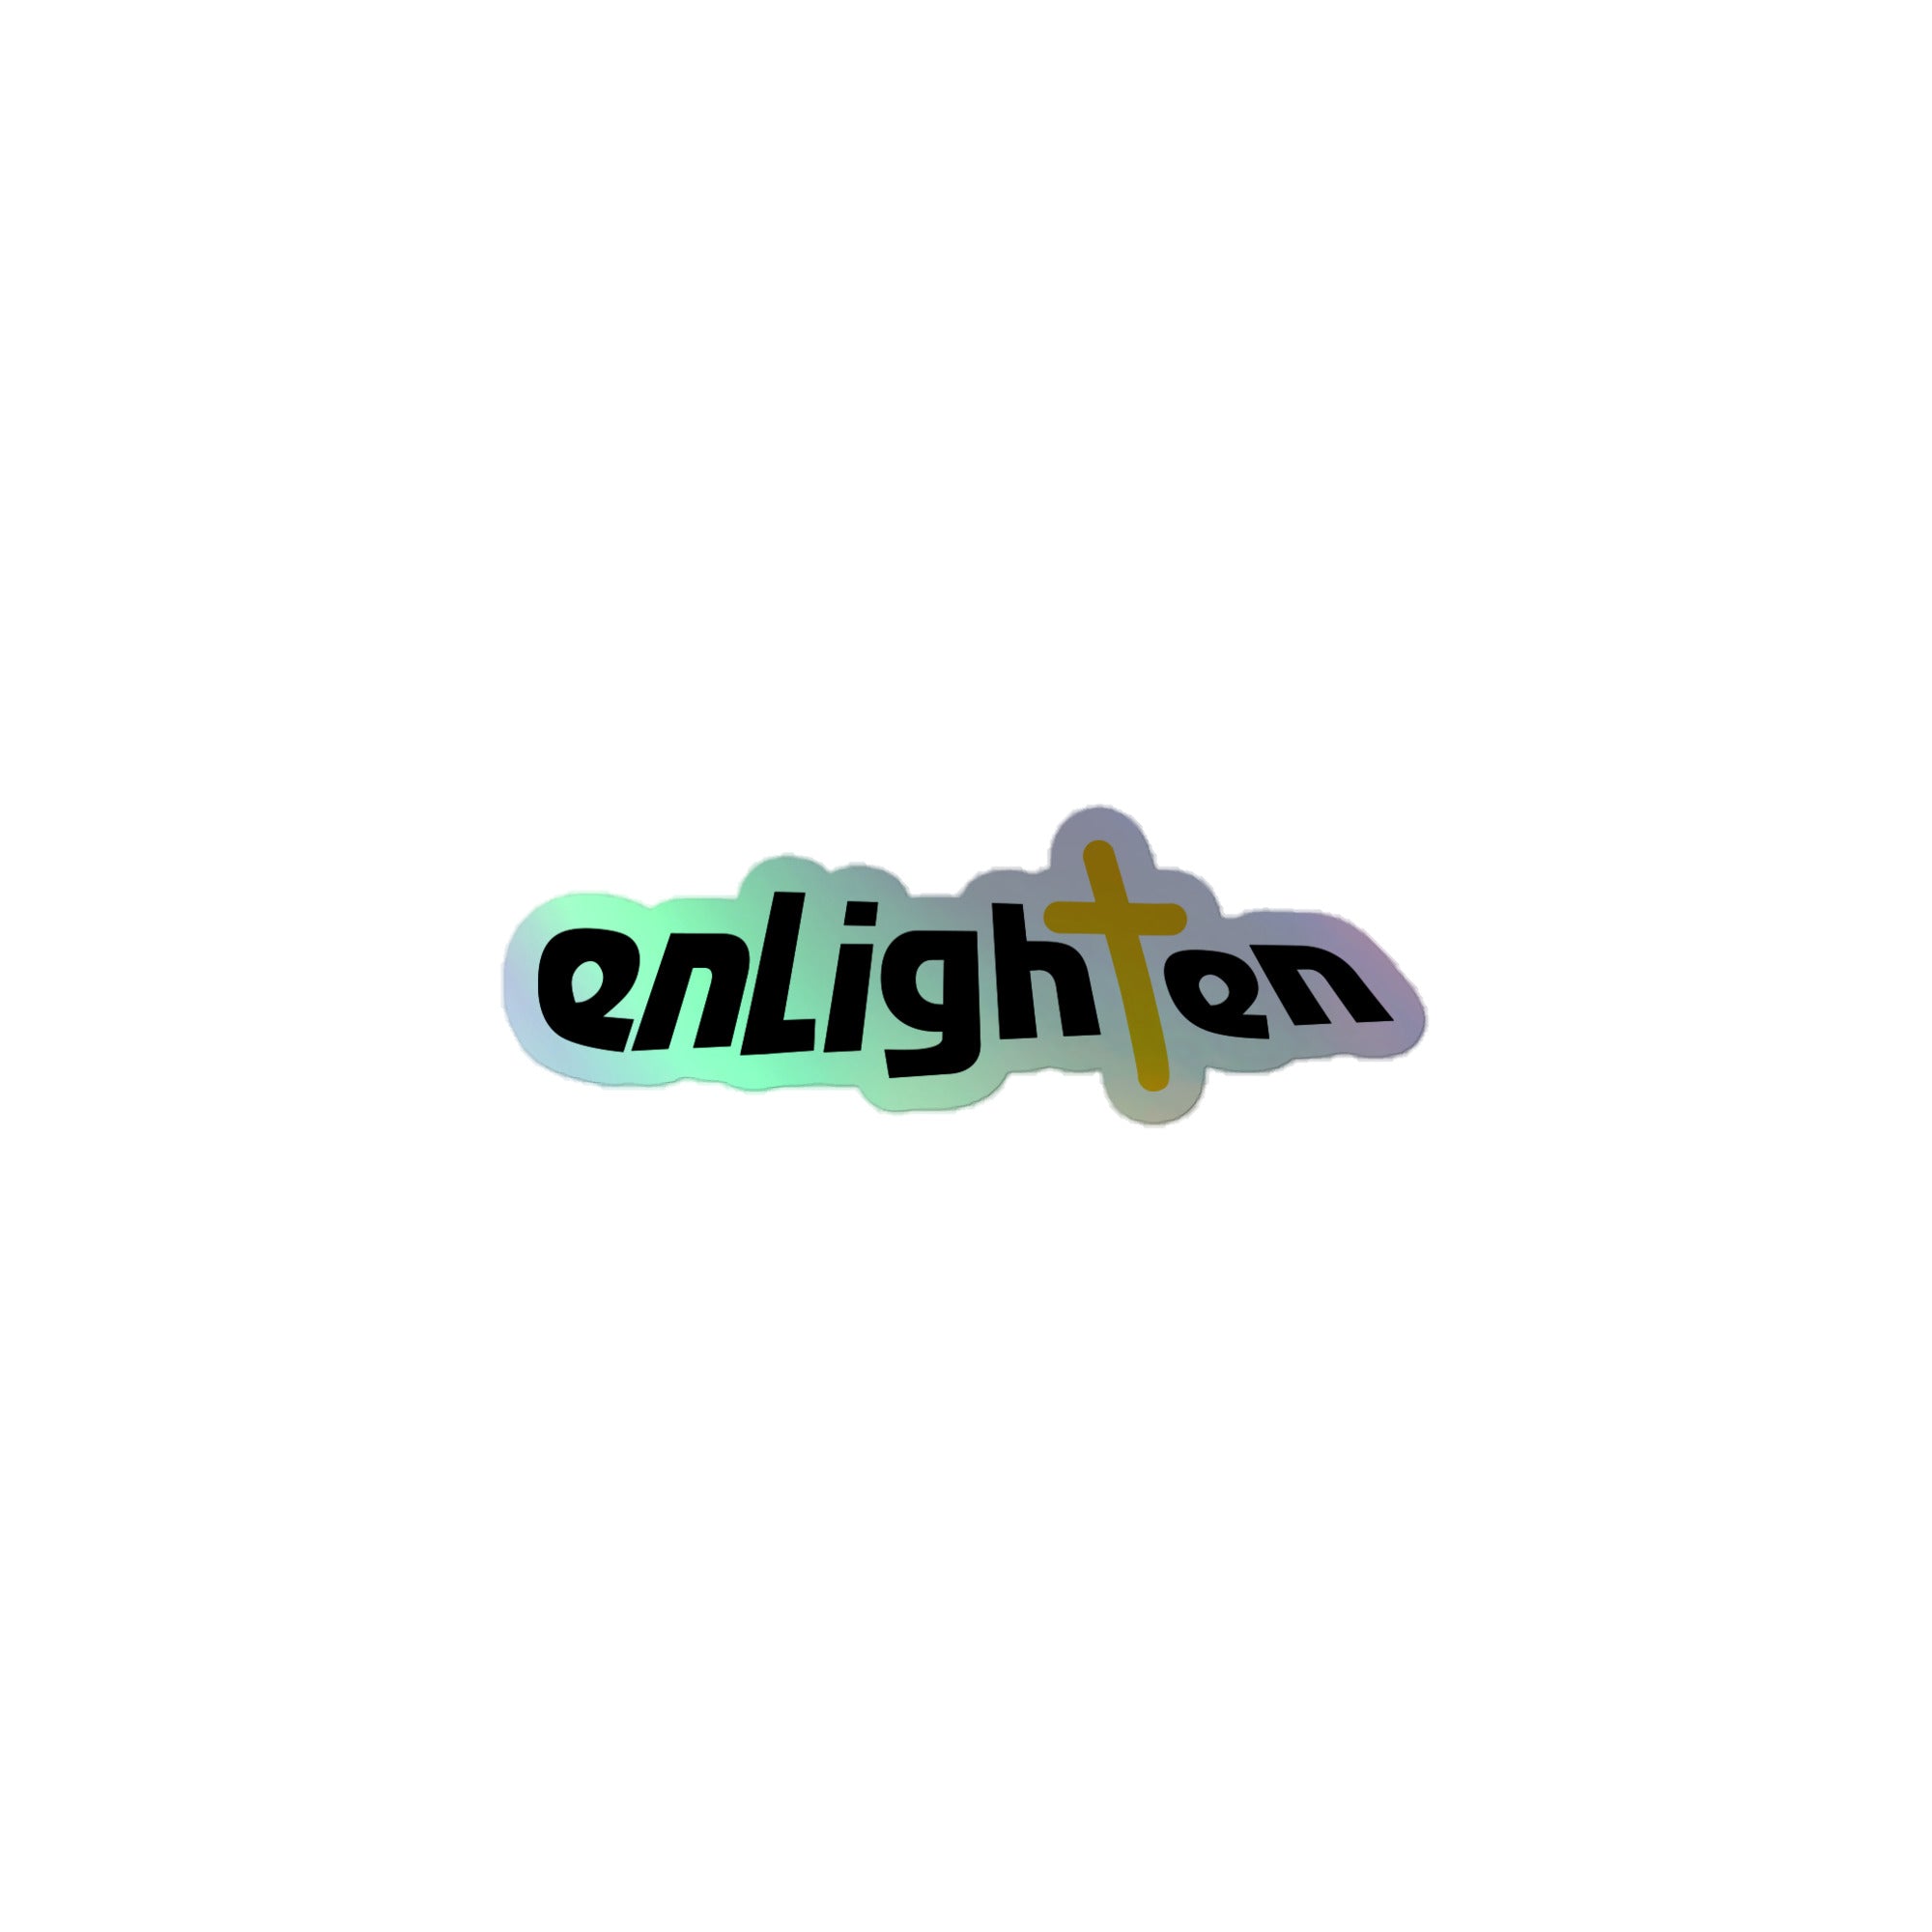 Enlighten: Holographic Sticker